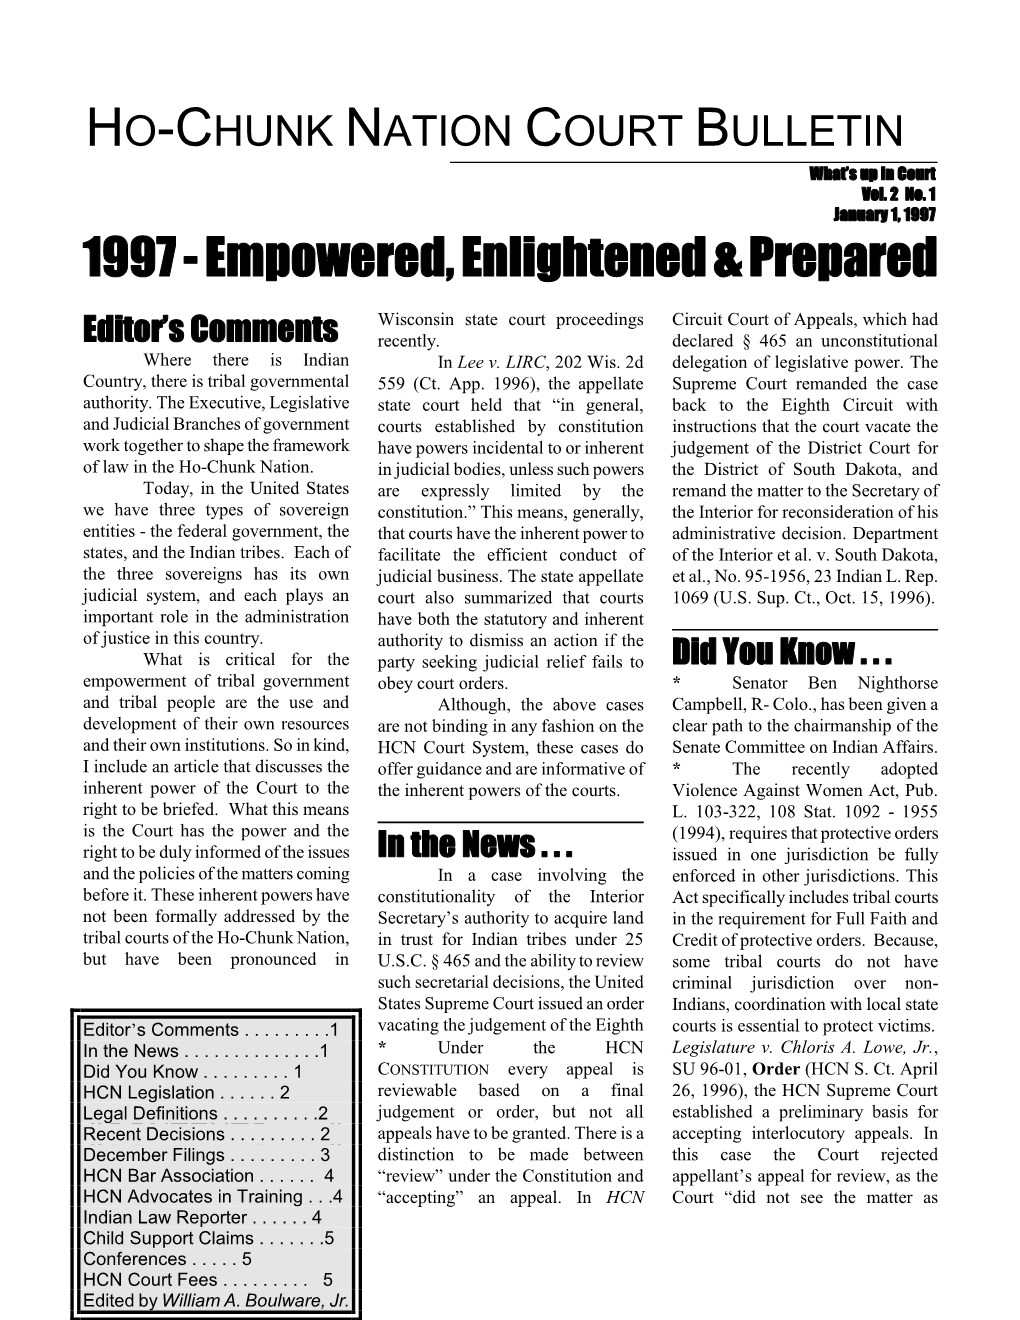 1997 1997 - Empowered, Enlightened & Prepared